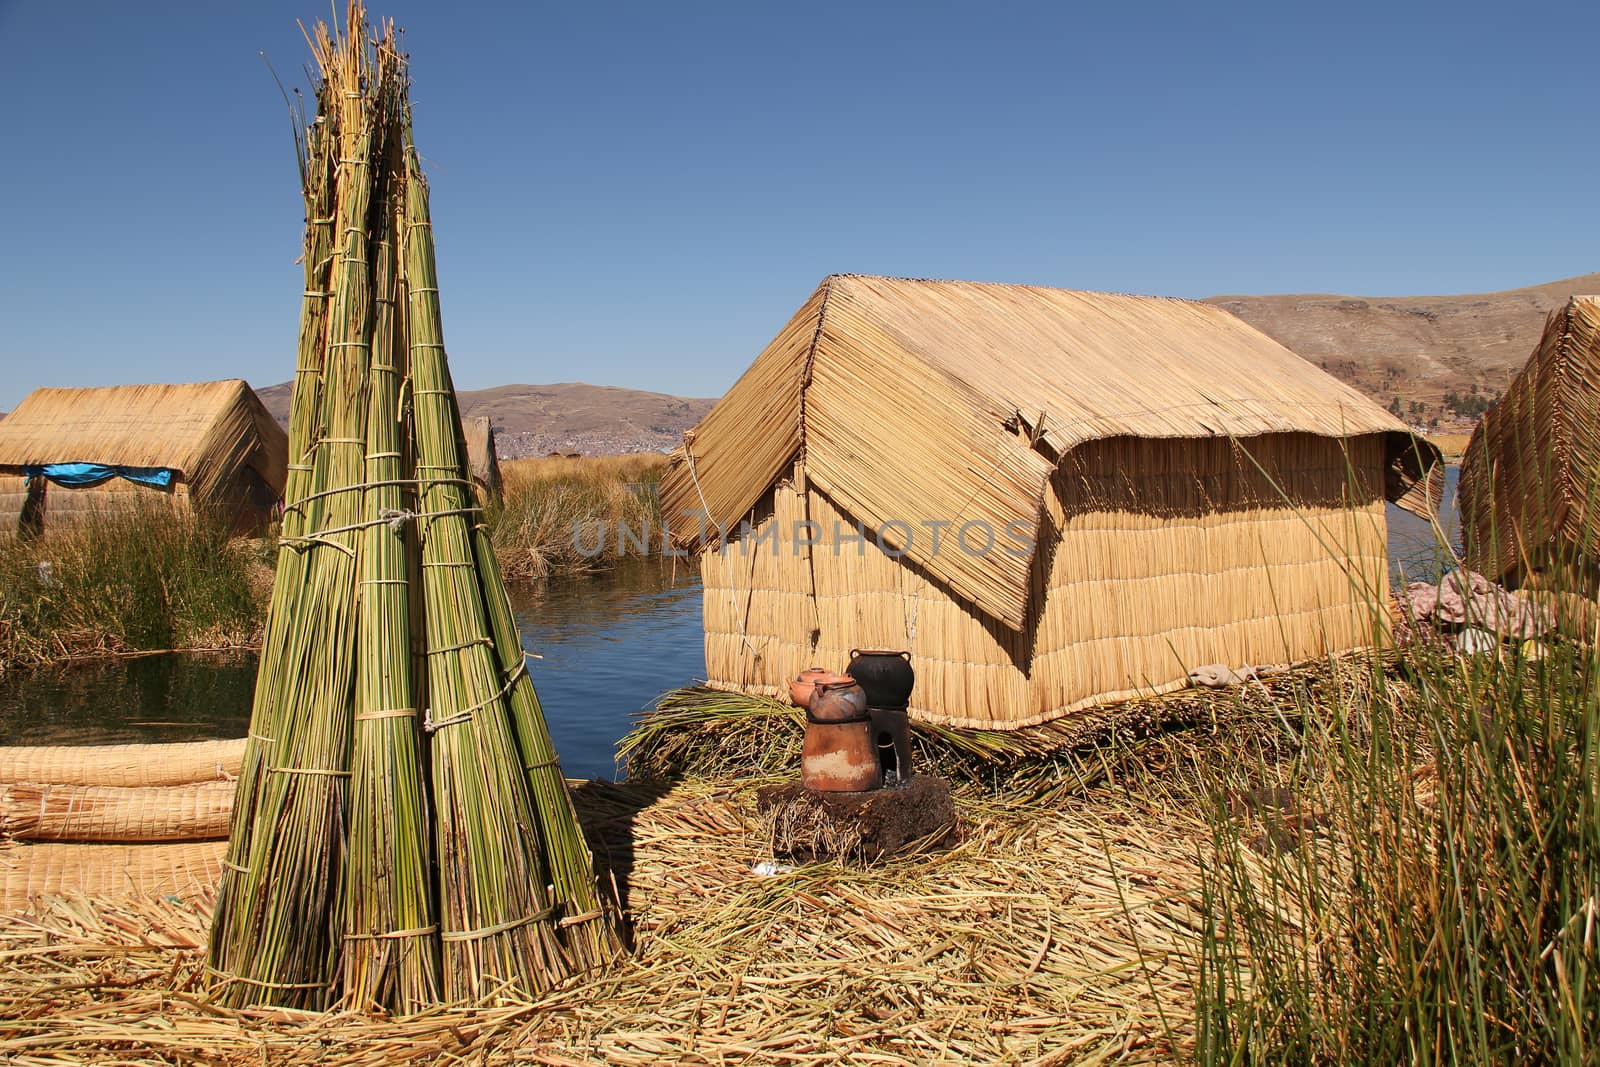 Titicaca by Aarstudio